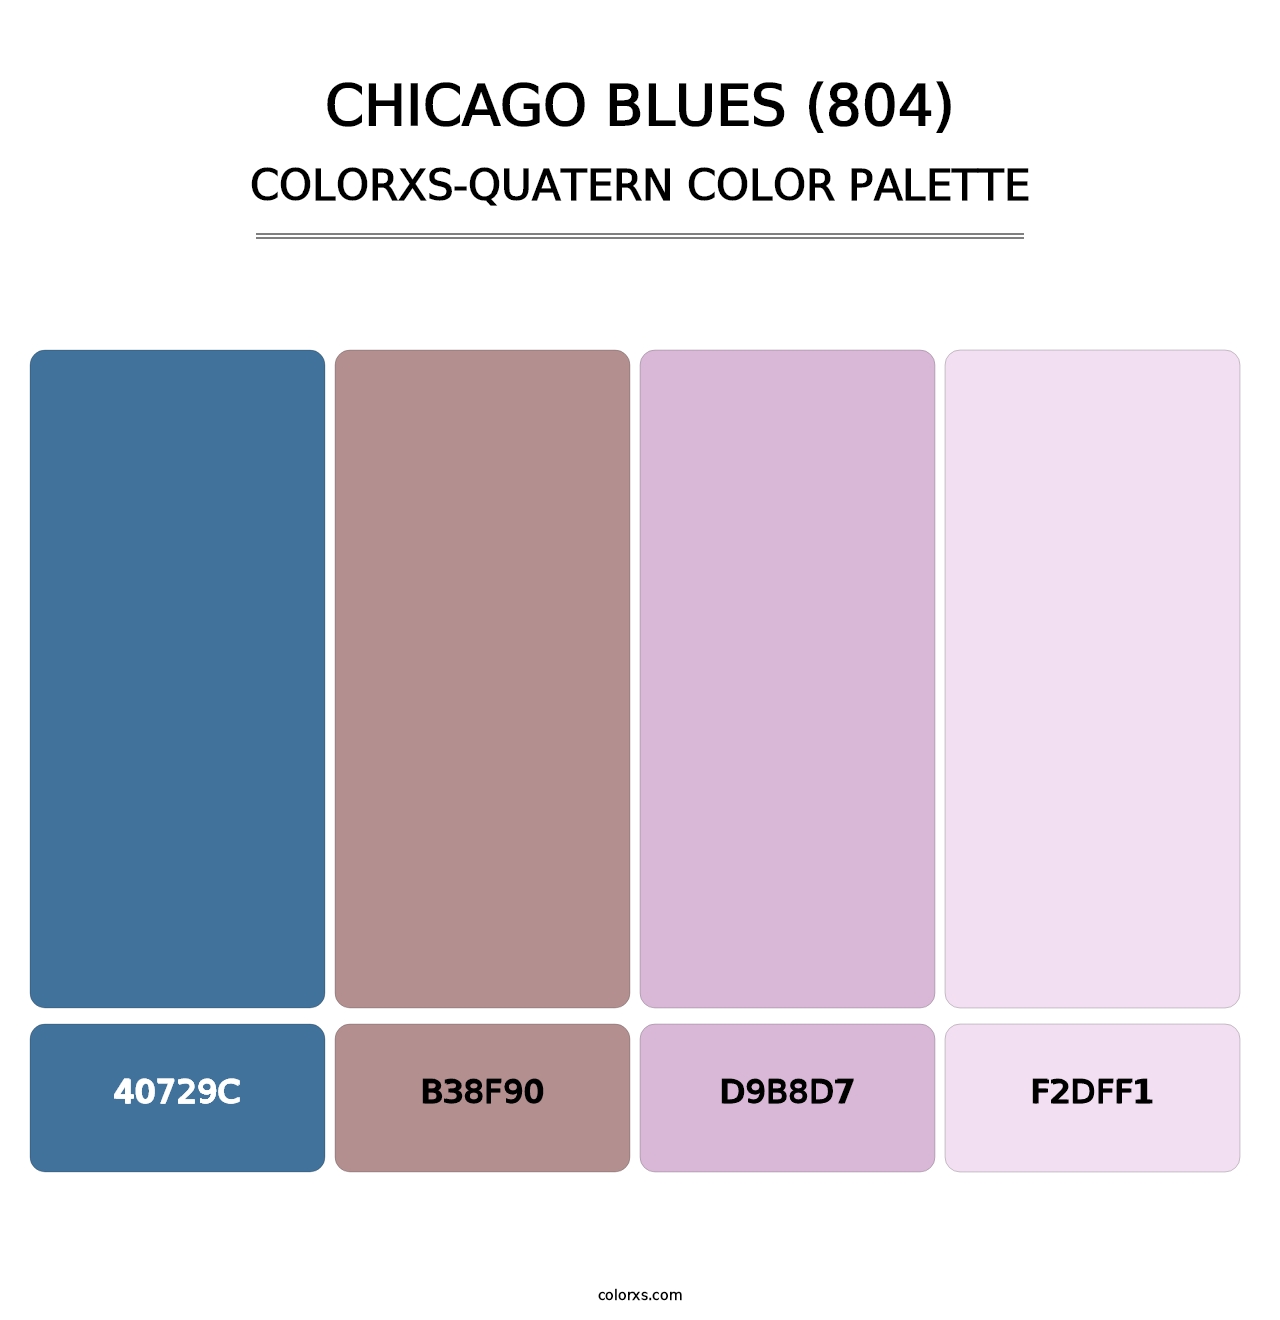 Chicago Blues (804) - Colorxs Quatern Palette